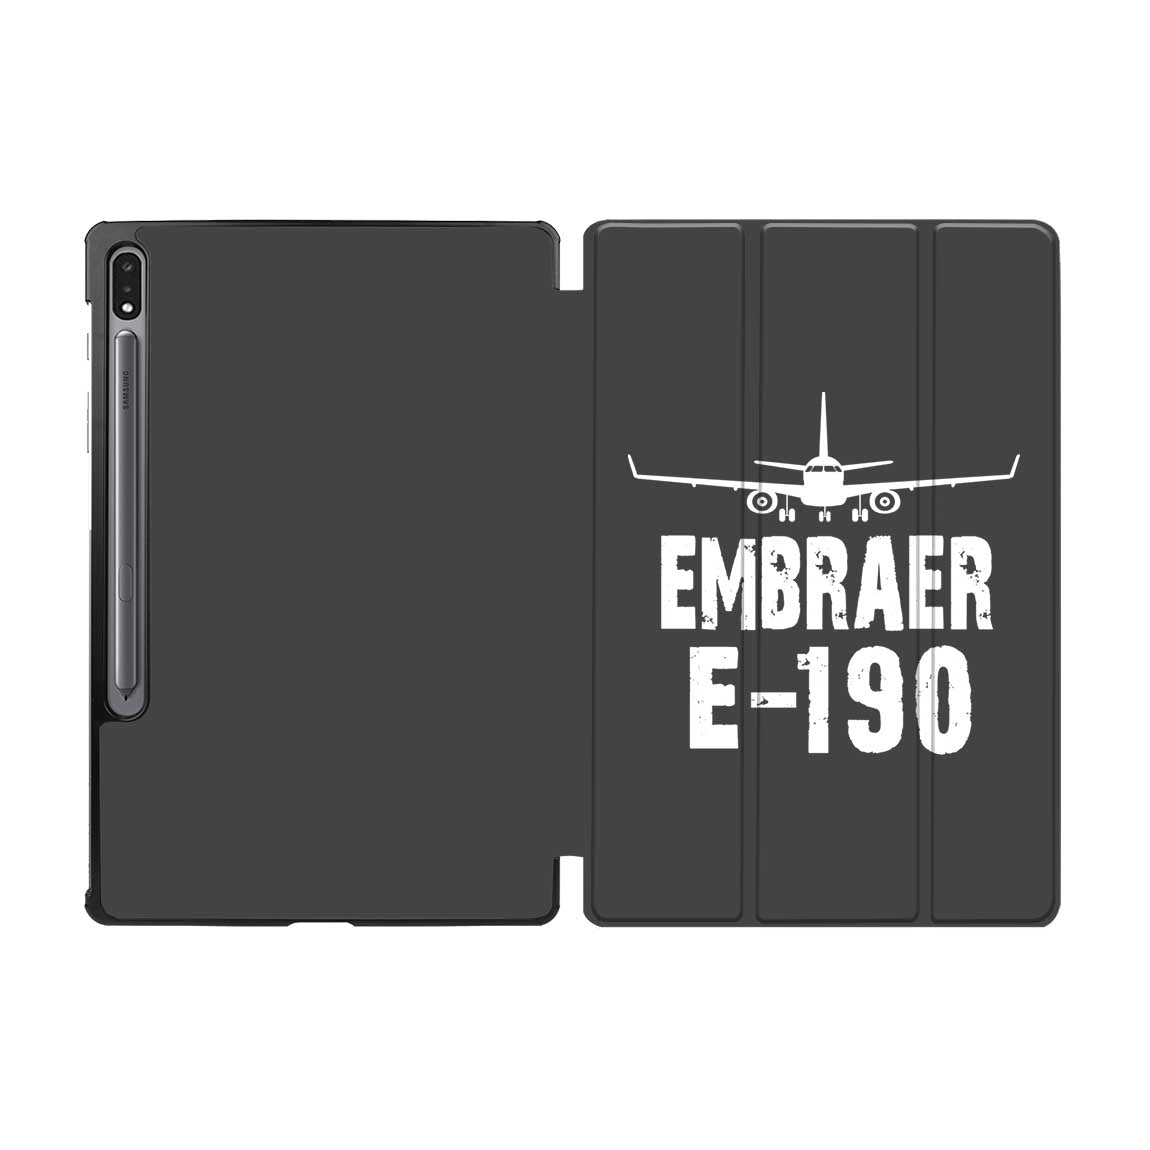 Embraer E-190 & Plane Designed Samsung Tablet Cases